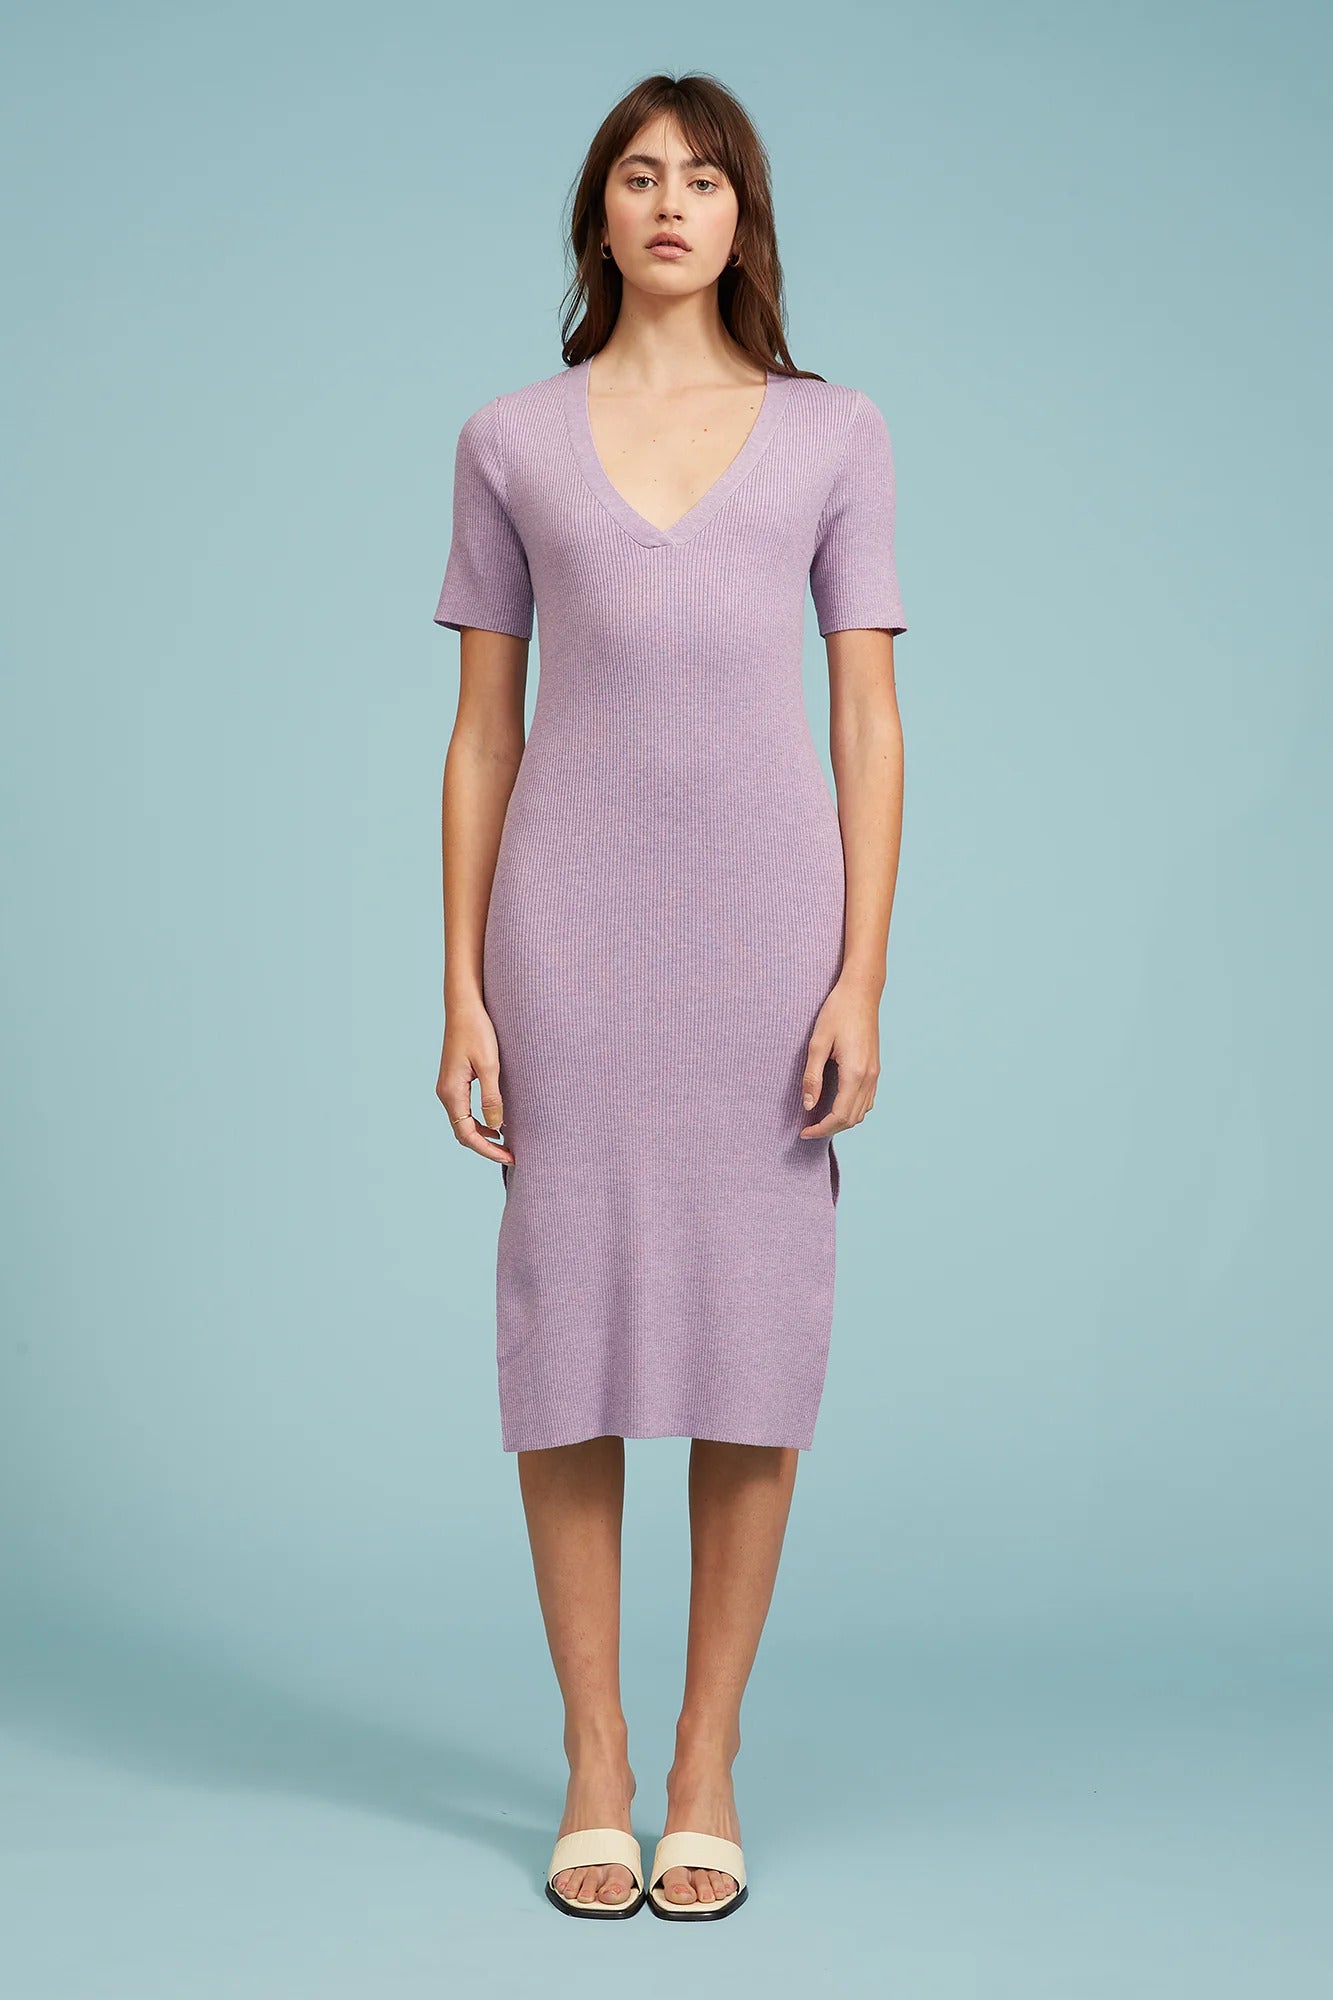 Lucy Paris Eloise Knit Purple Dress